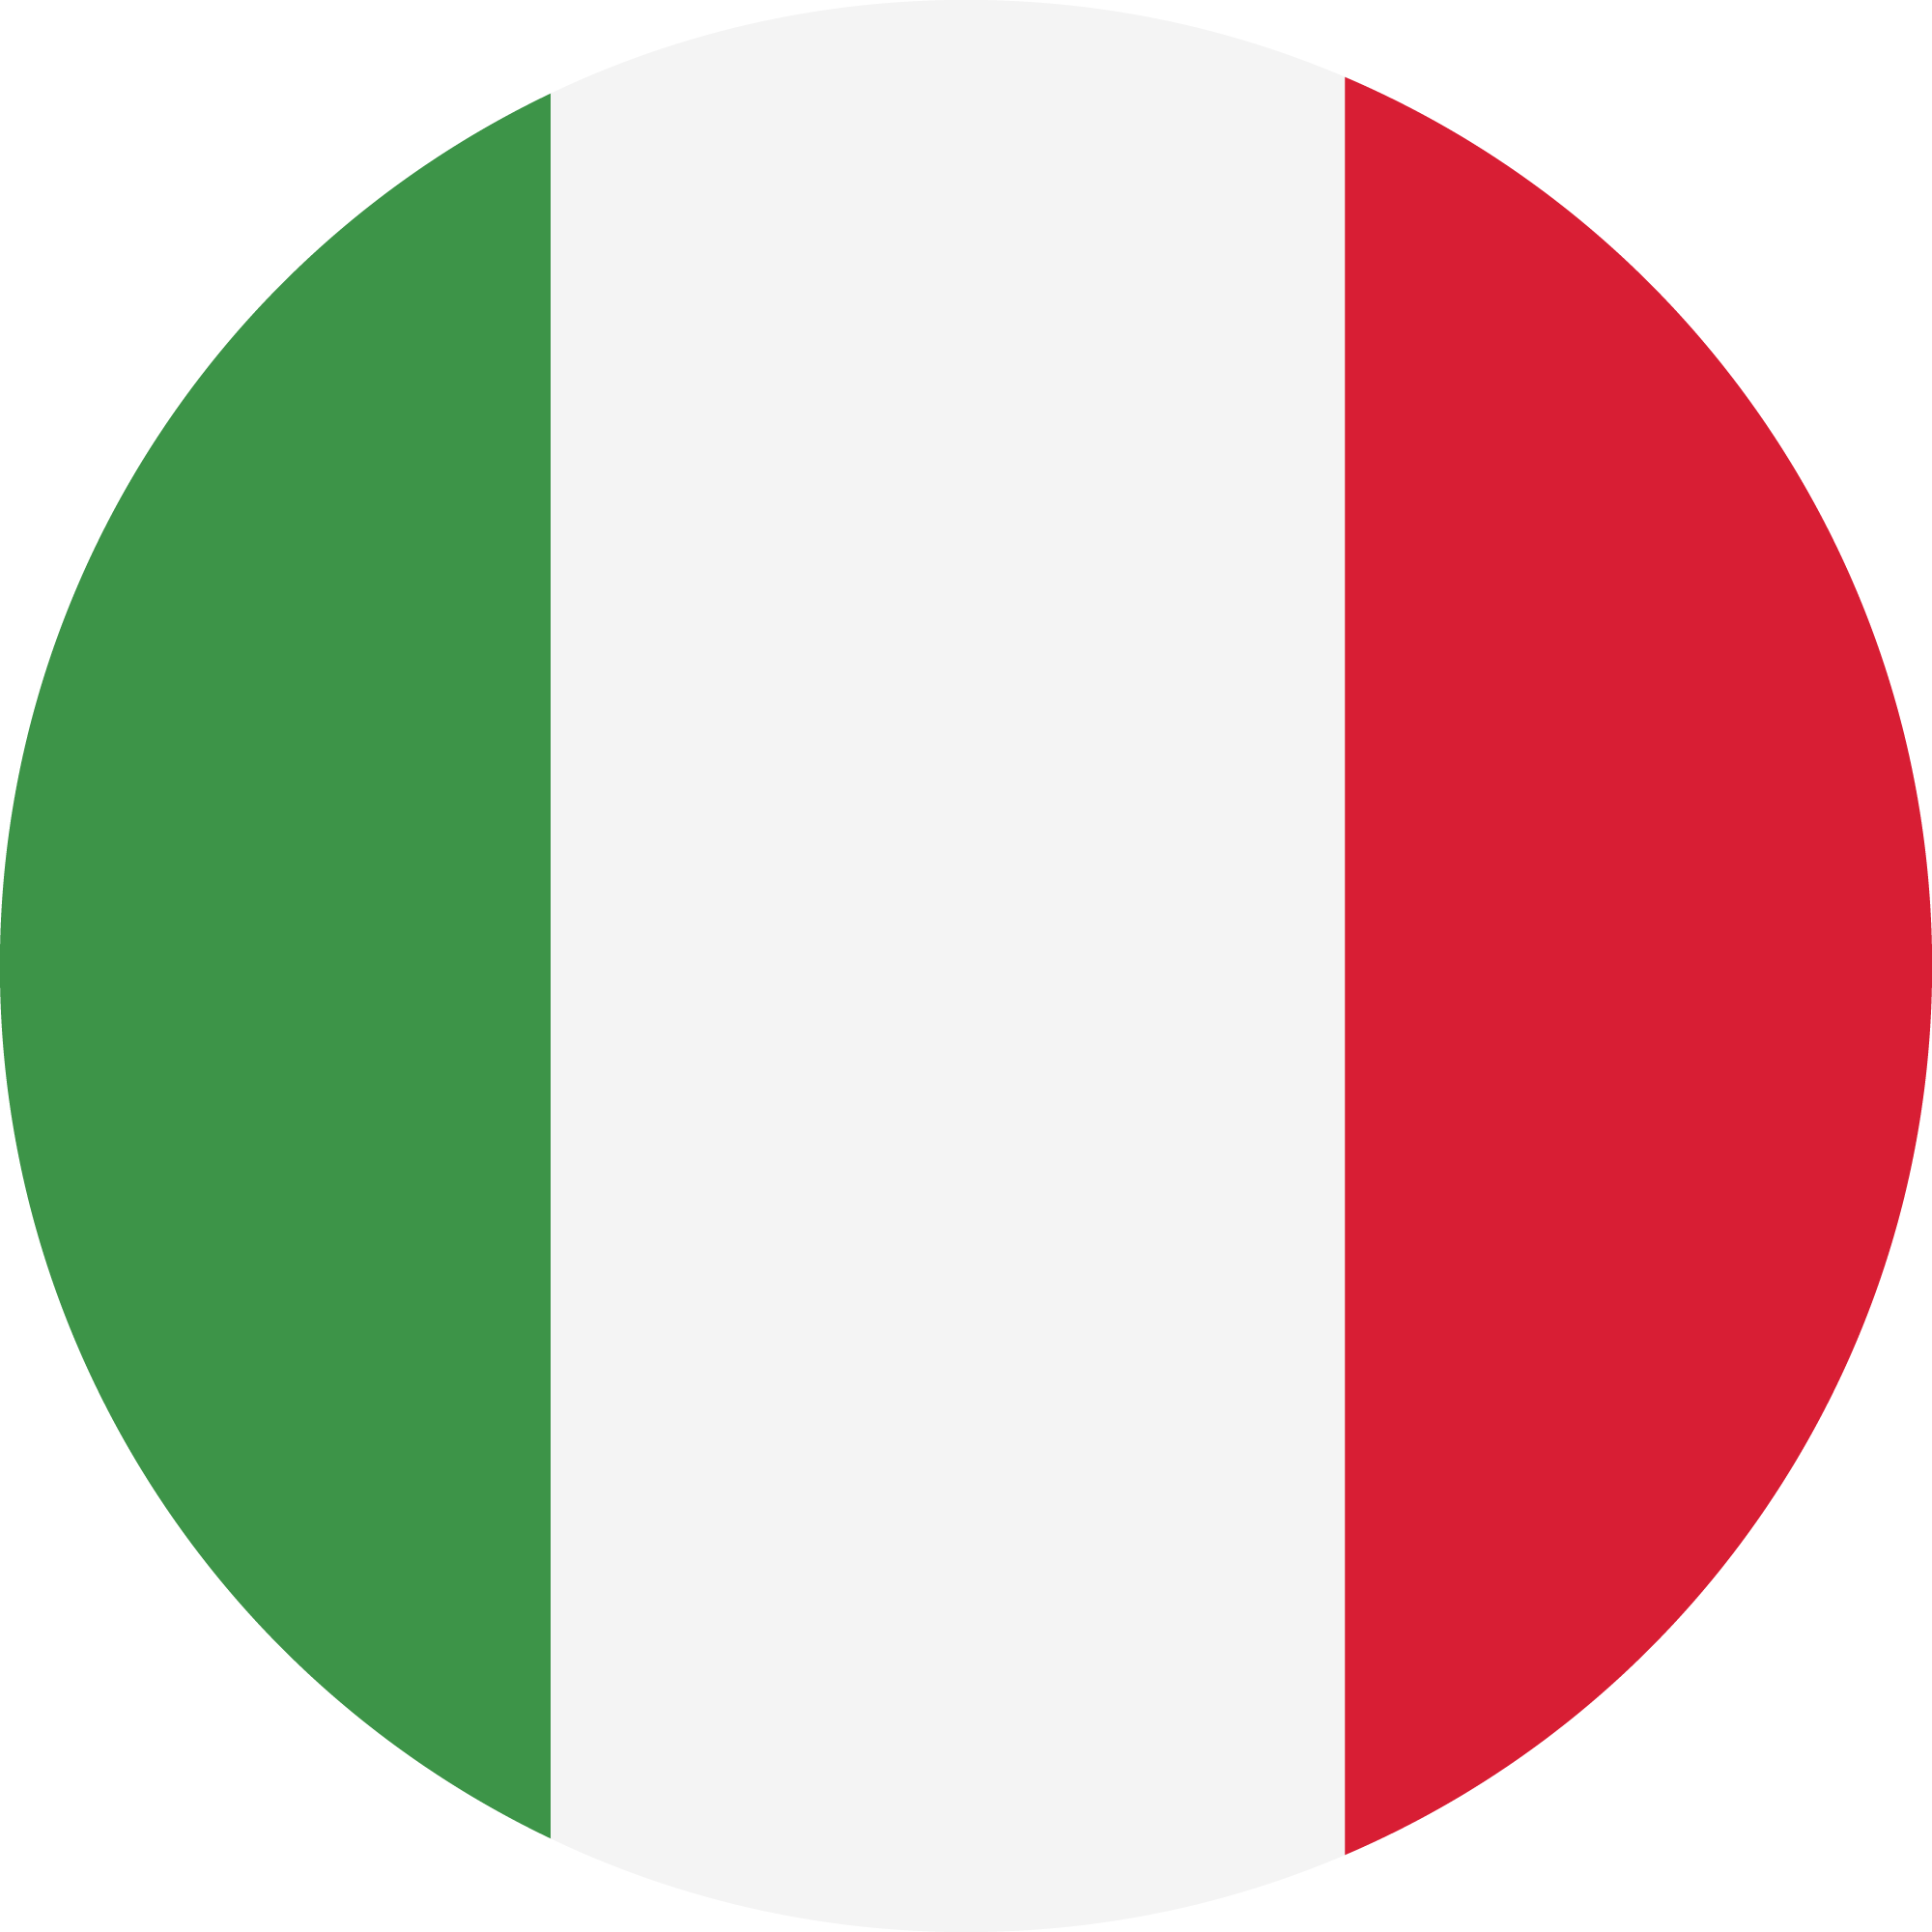 יורו 24: איטליה רוצה לשמור על התואר נגד כל הסיכויים